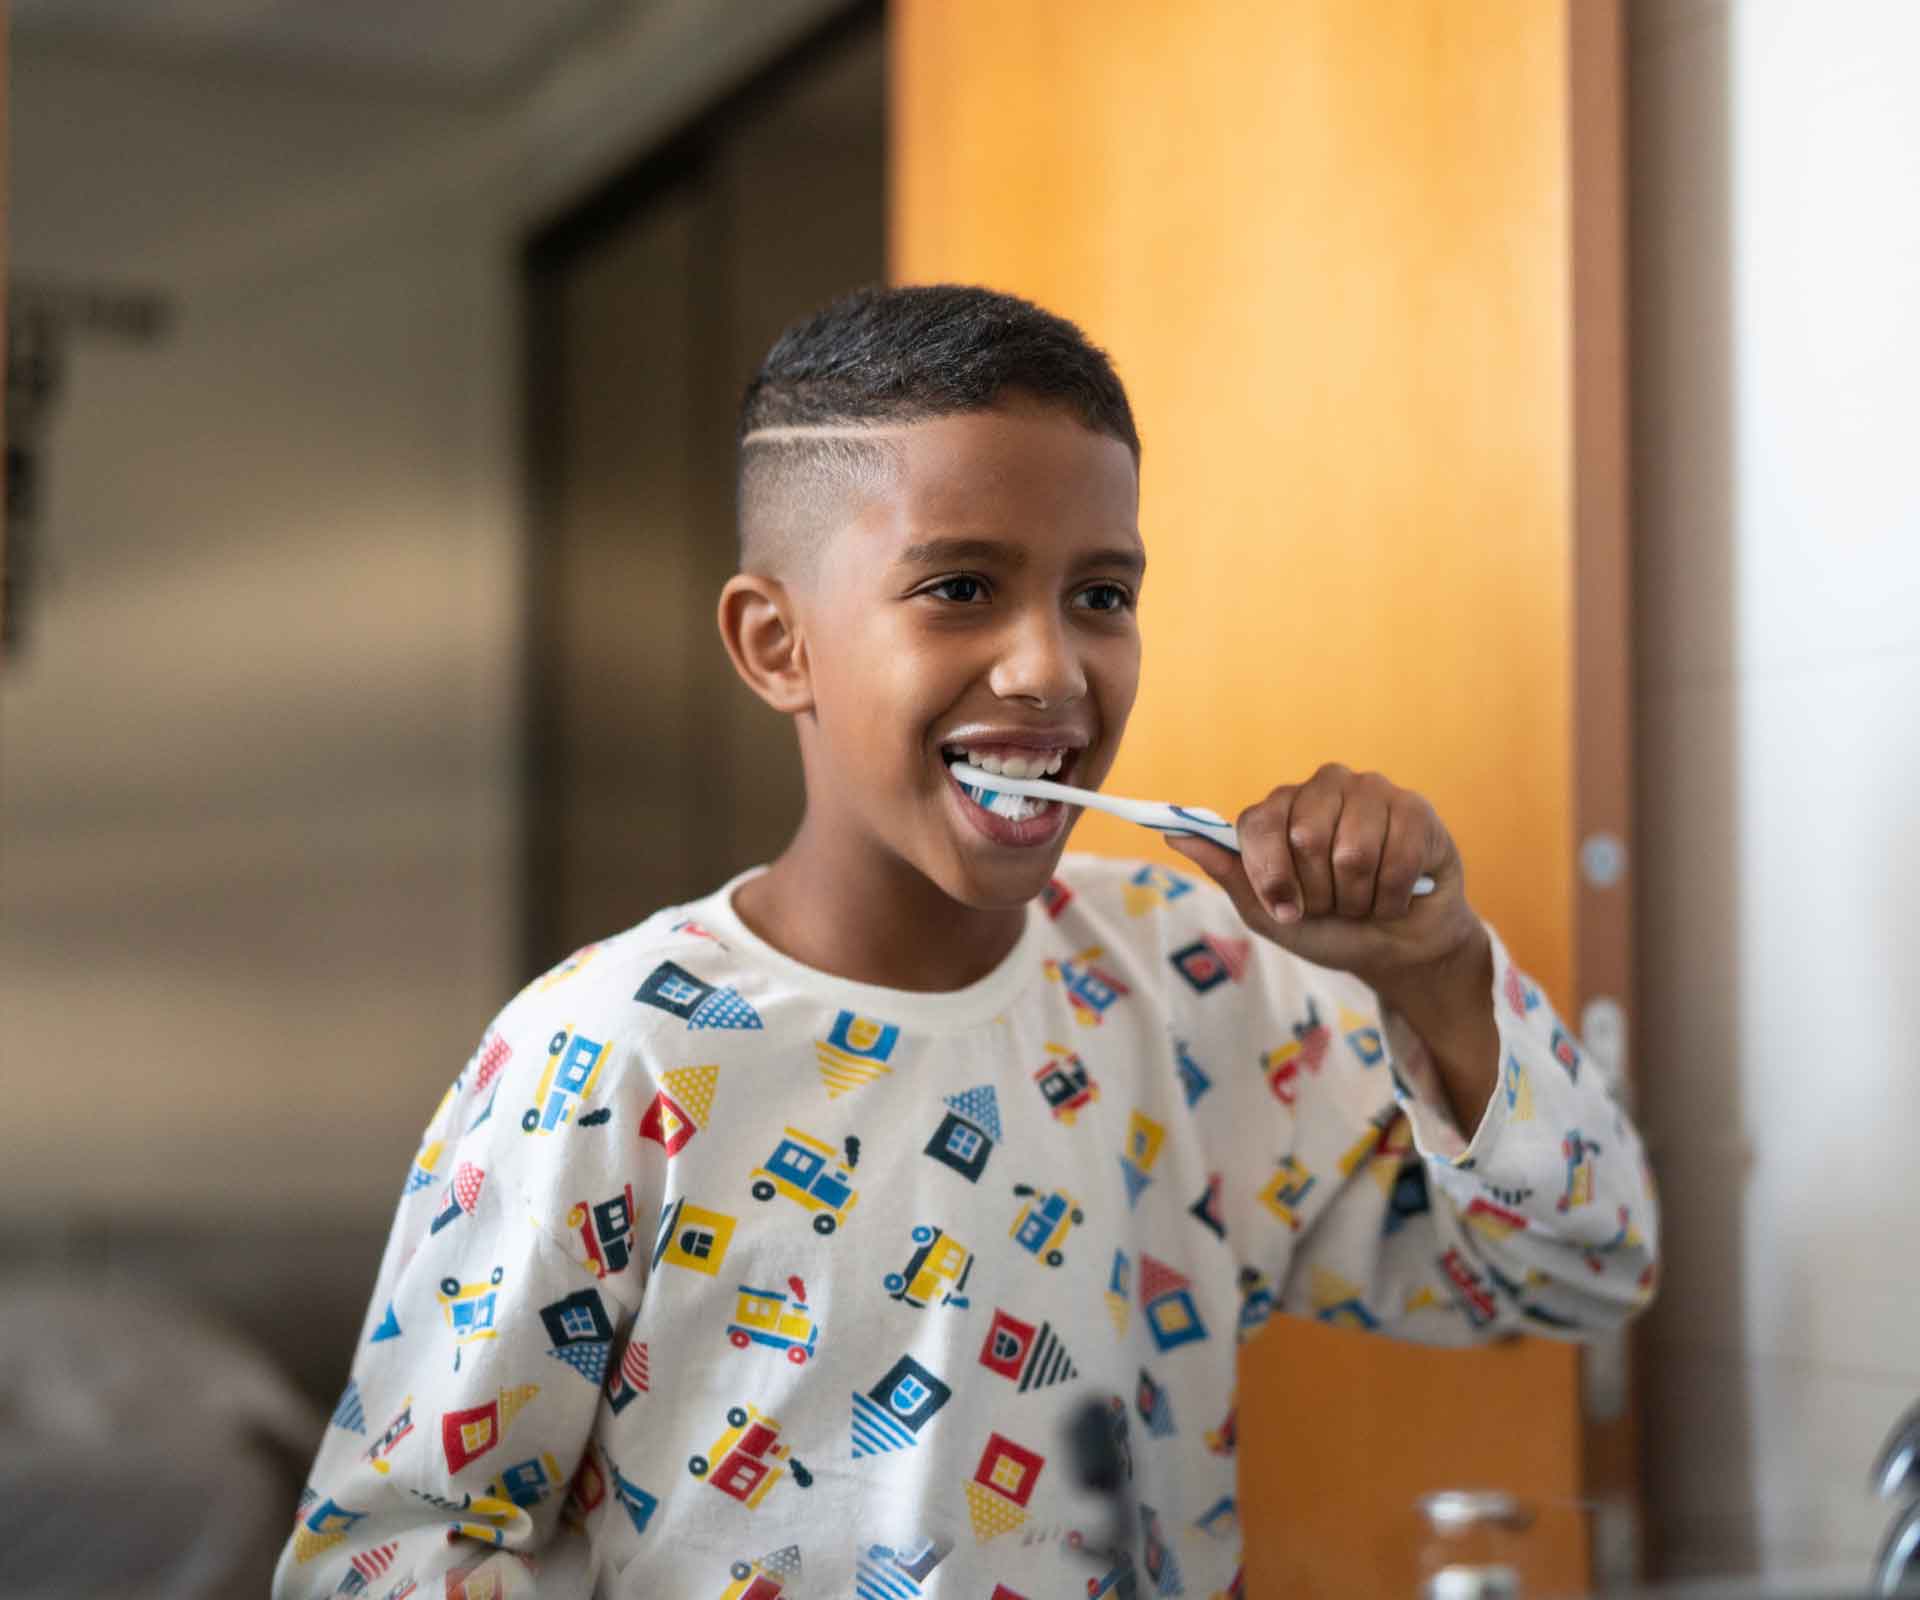 Igiene orale nei bambini: i consigli dell'esperta